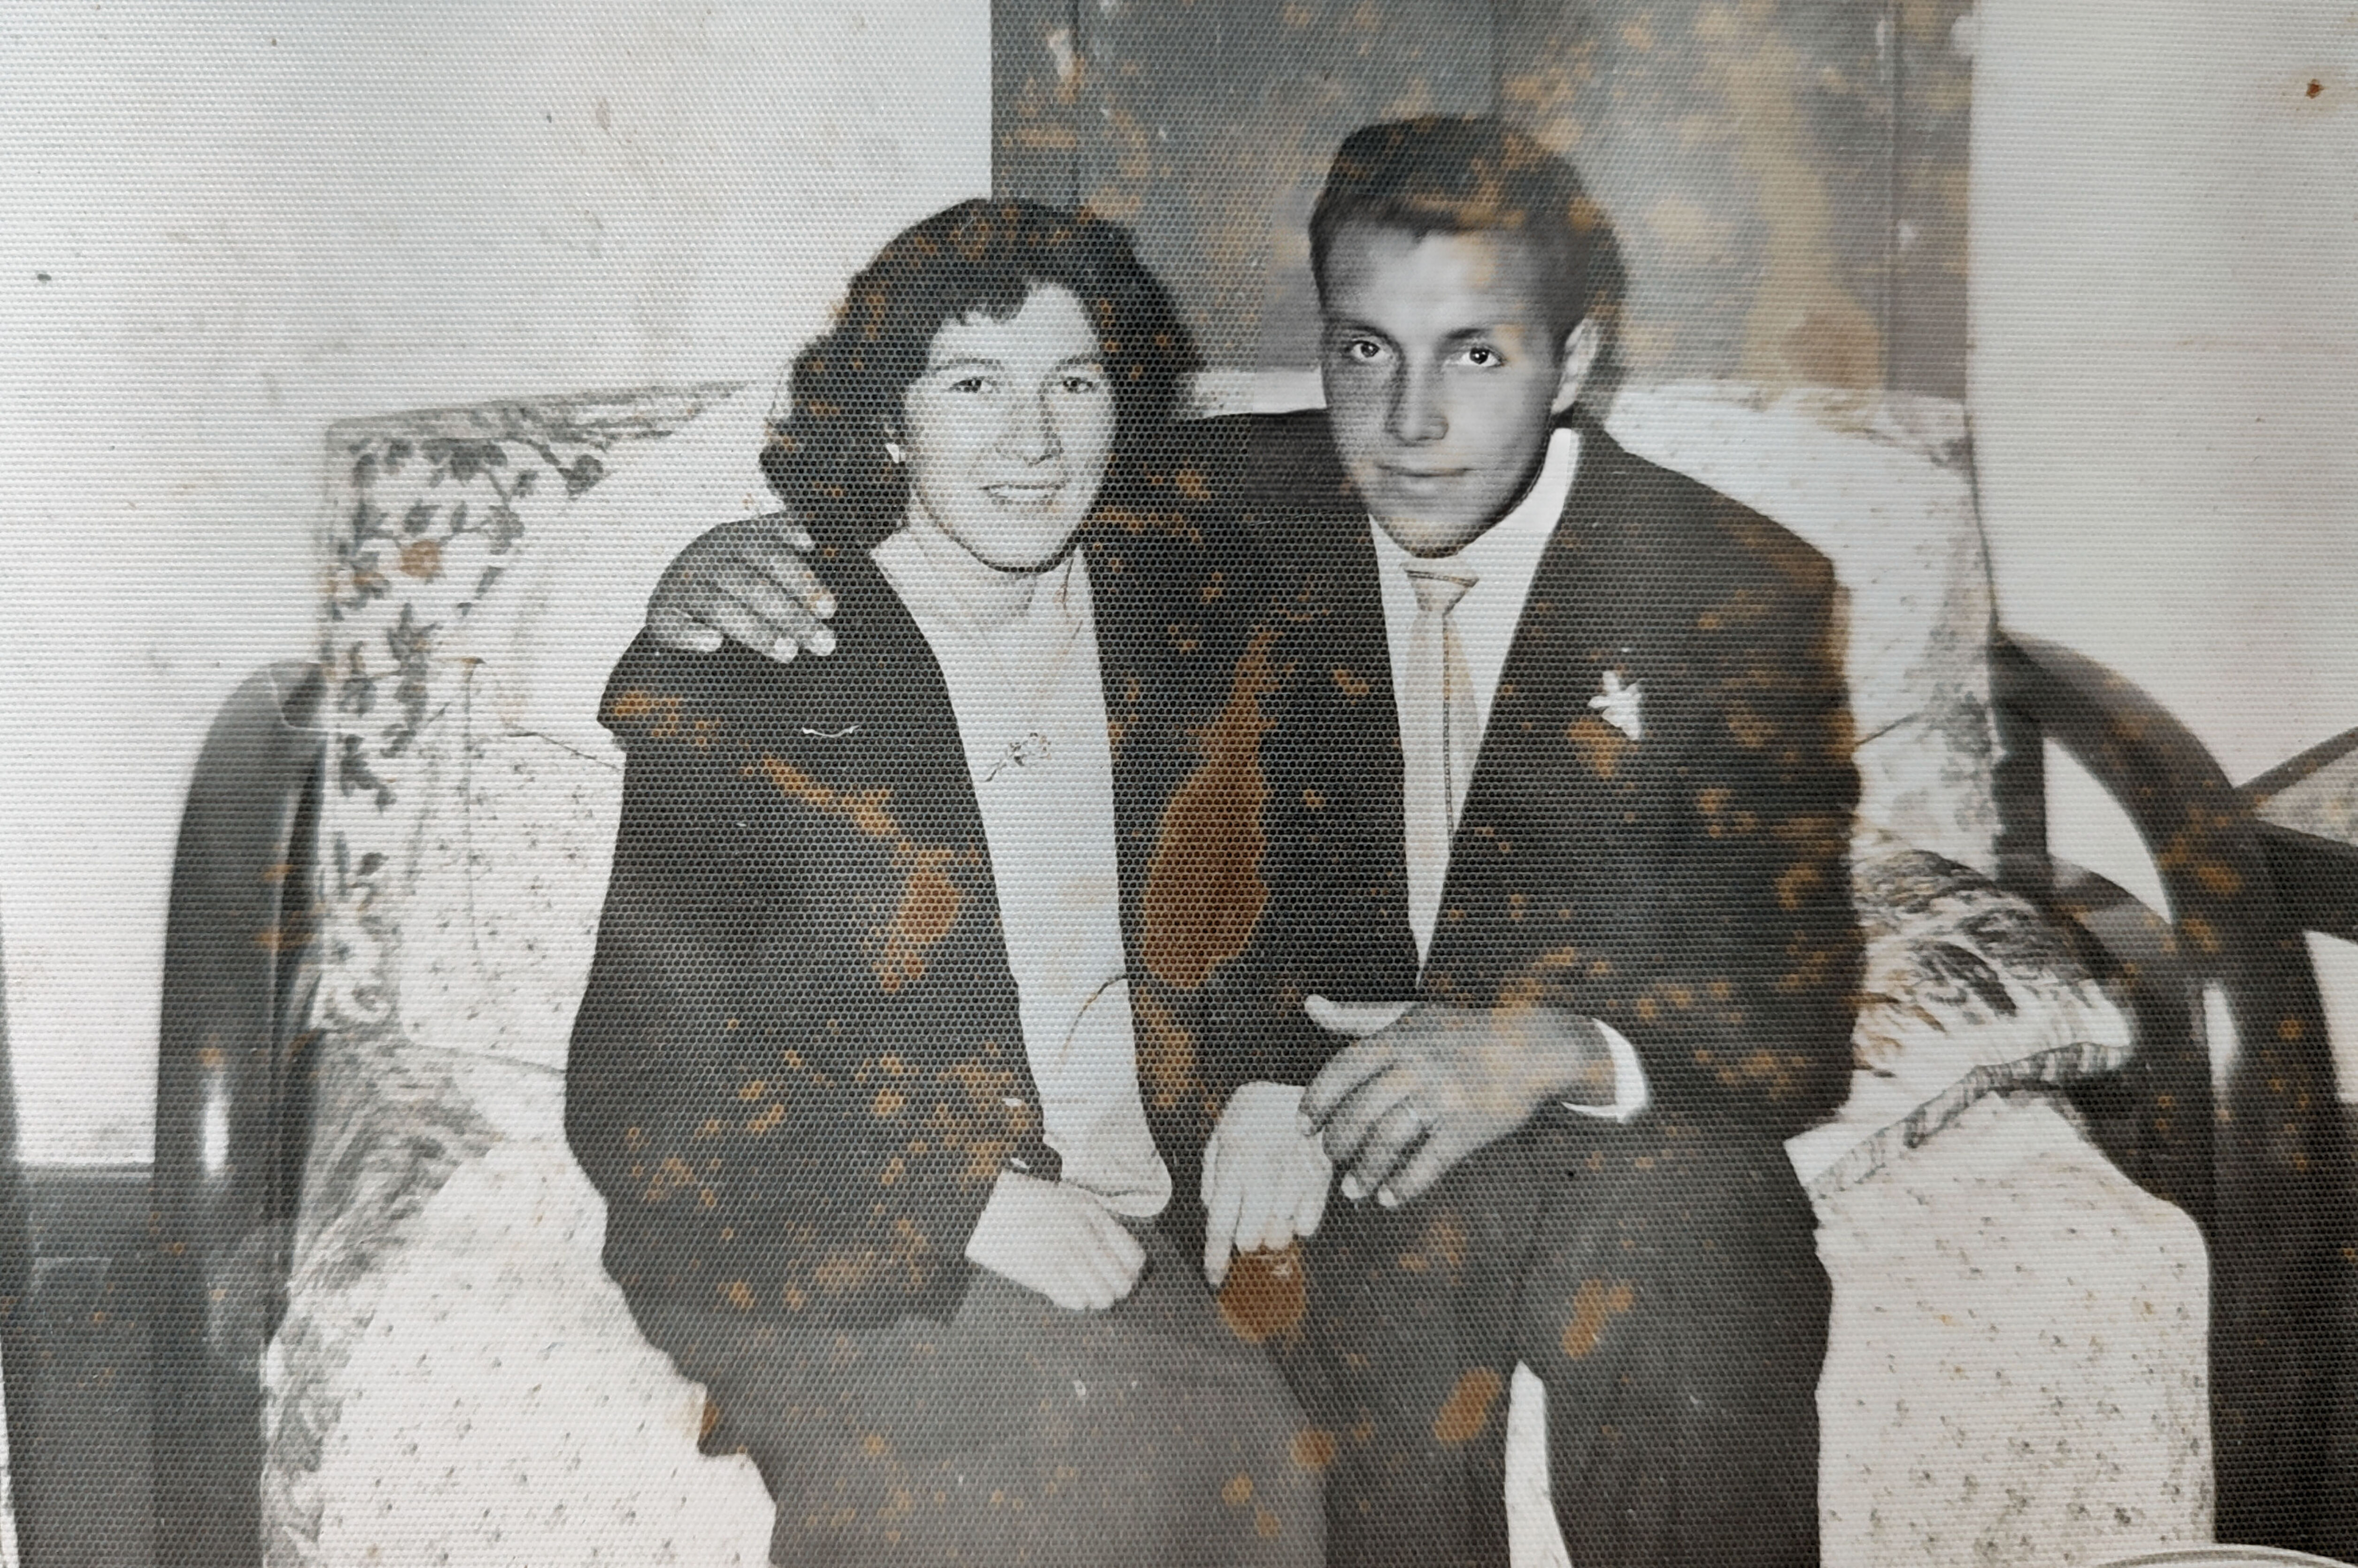 matrimonio de mis papás
16 Abril 1956